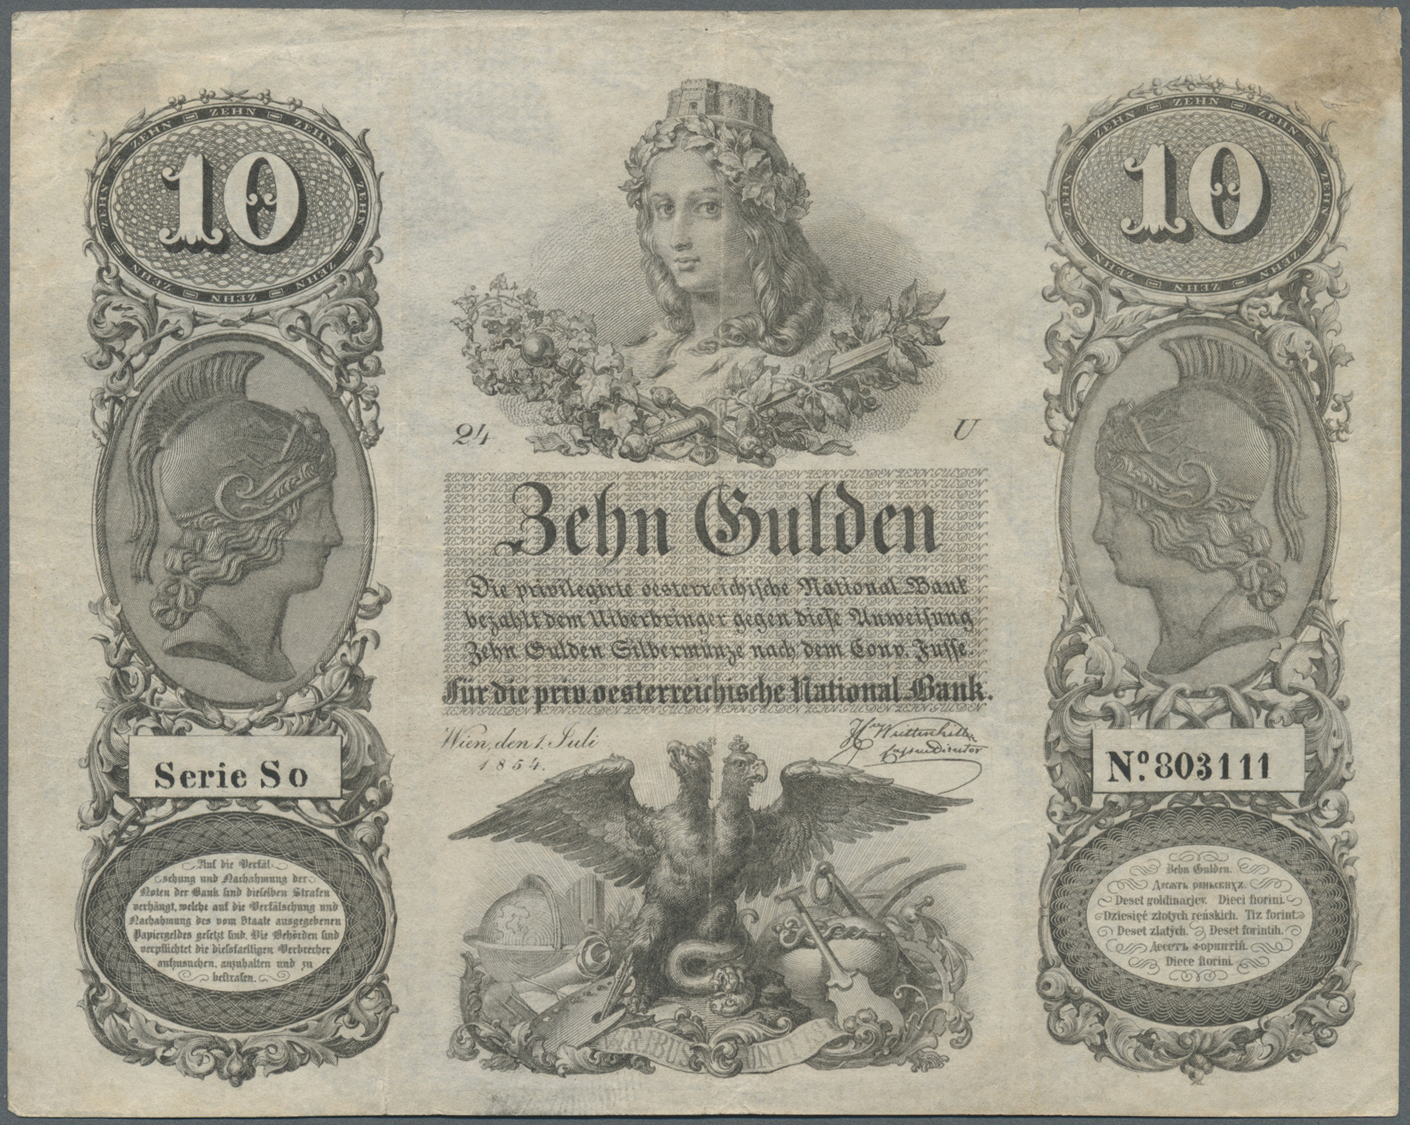 00129 Austria / Österreich: Privilegirte Oesterreichische National-Bank 10 Gulden 1854, P.A83, Very Rare Note In Excelle - Austria